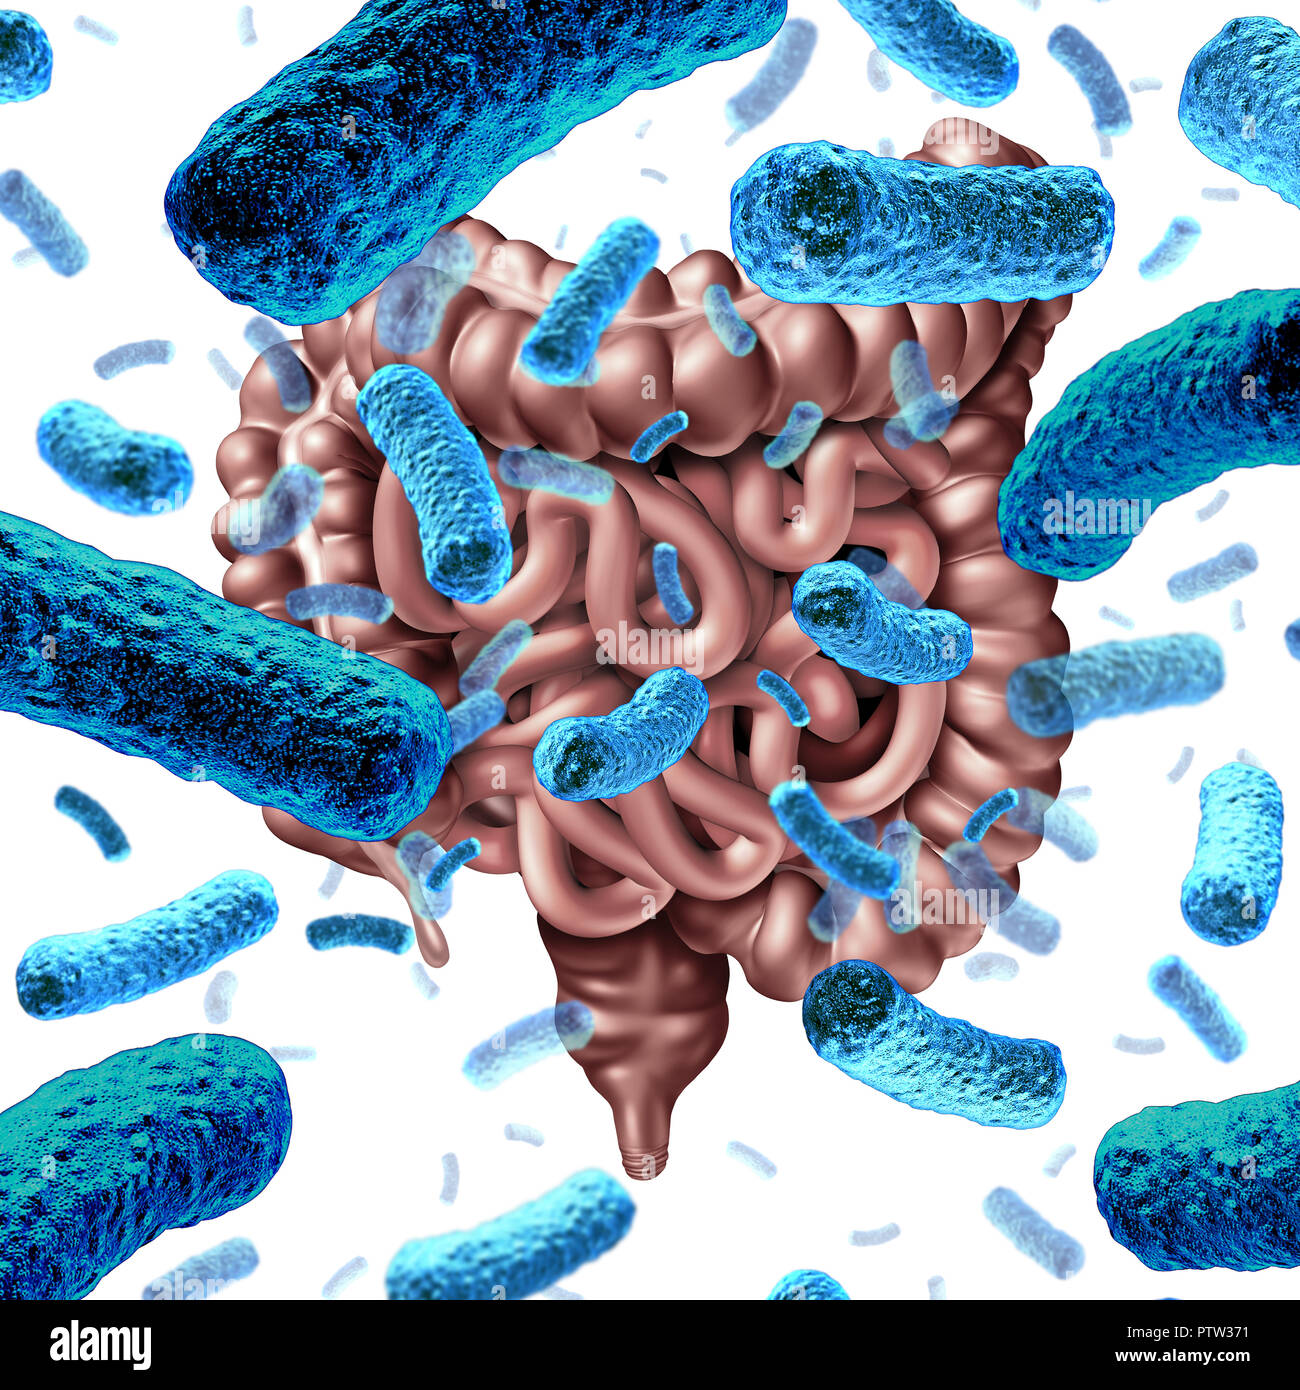 Batteri intestinali come batterio probiotici all'interno dell'intestino tenue e la microflora digestiva all'interno del colon o intestino come un simbolo di salute per microbiome. Foto Stock